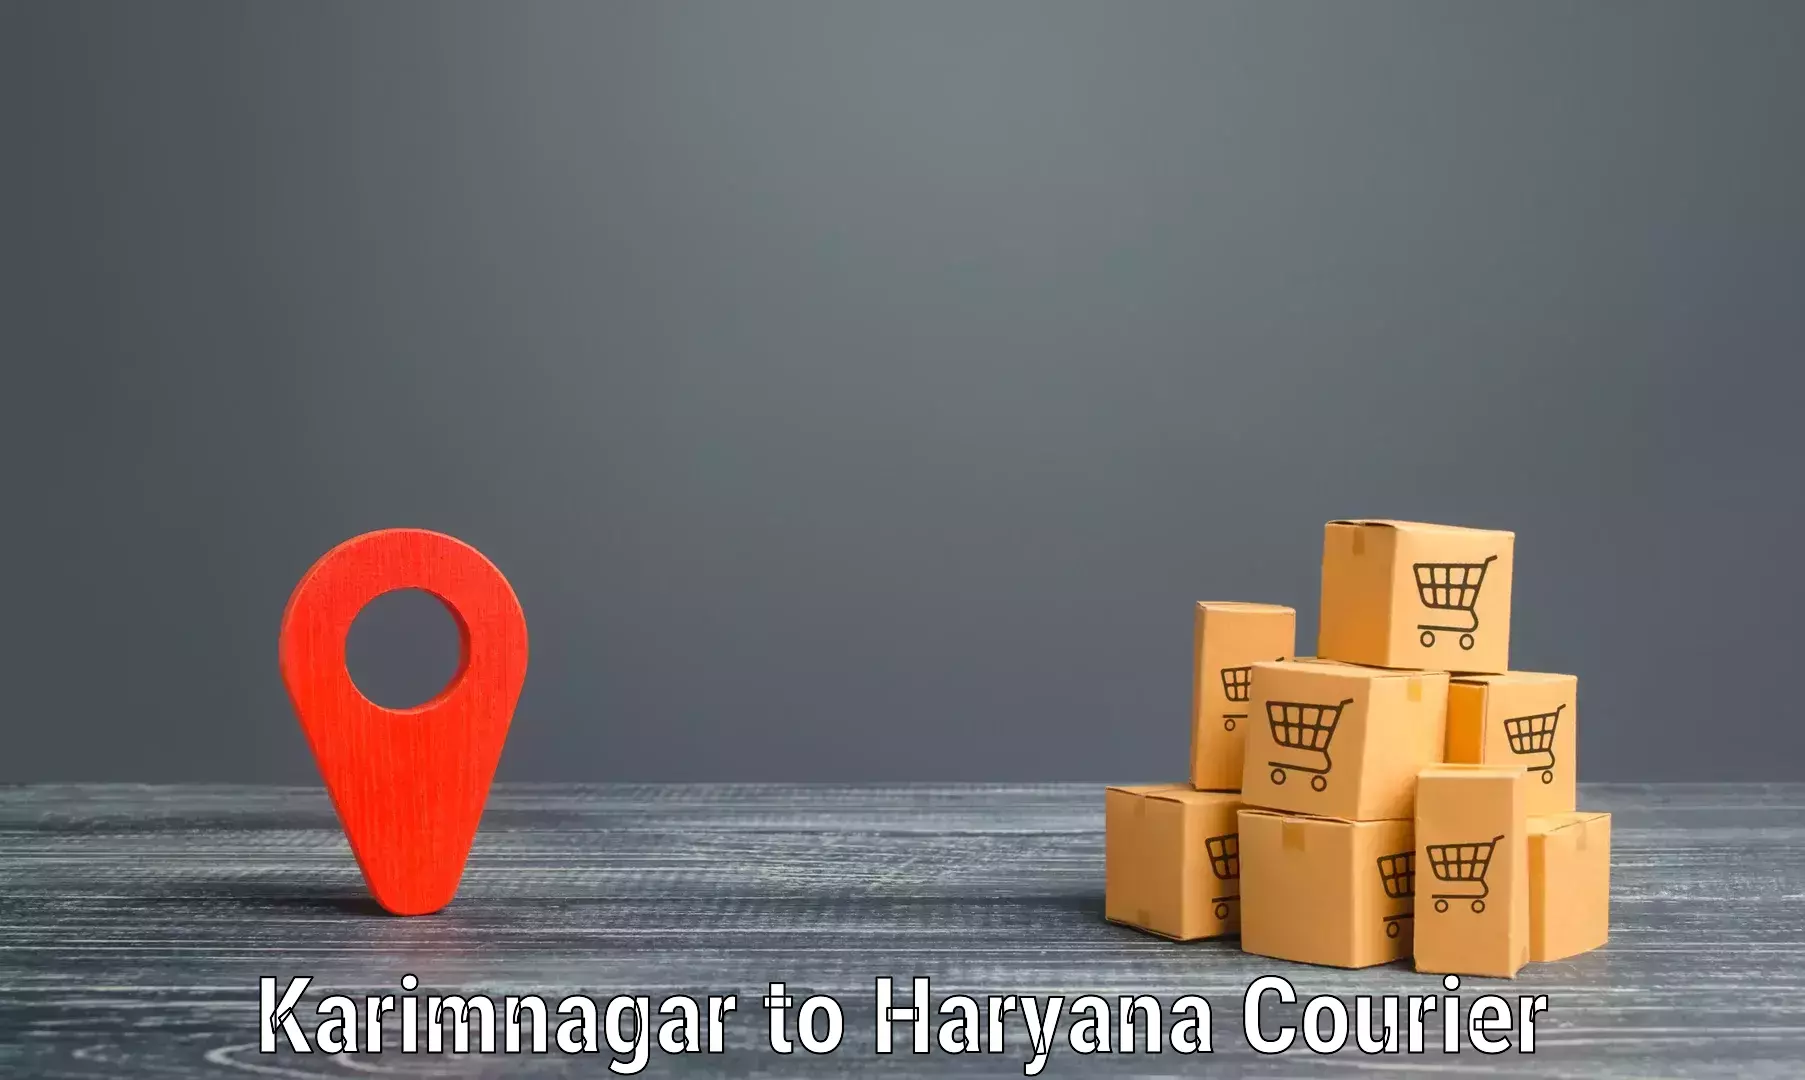 Global freight services Karimnagar to Haryana